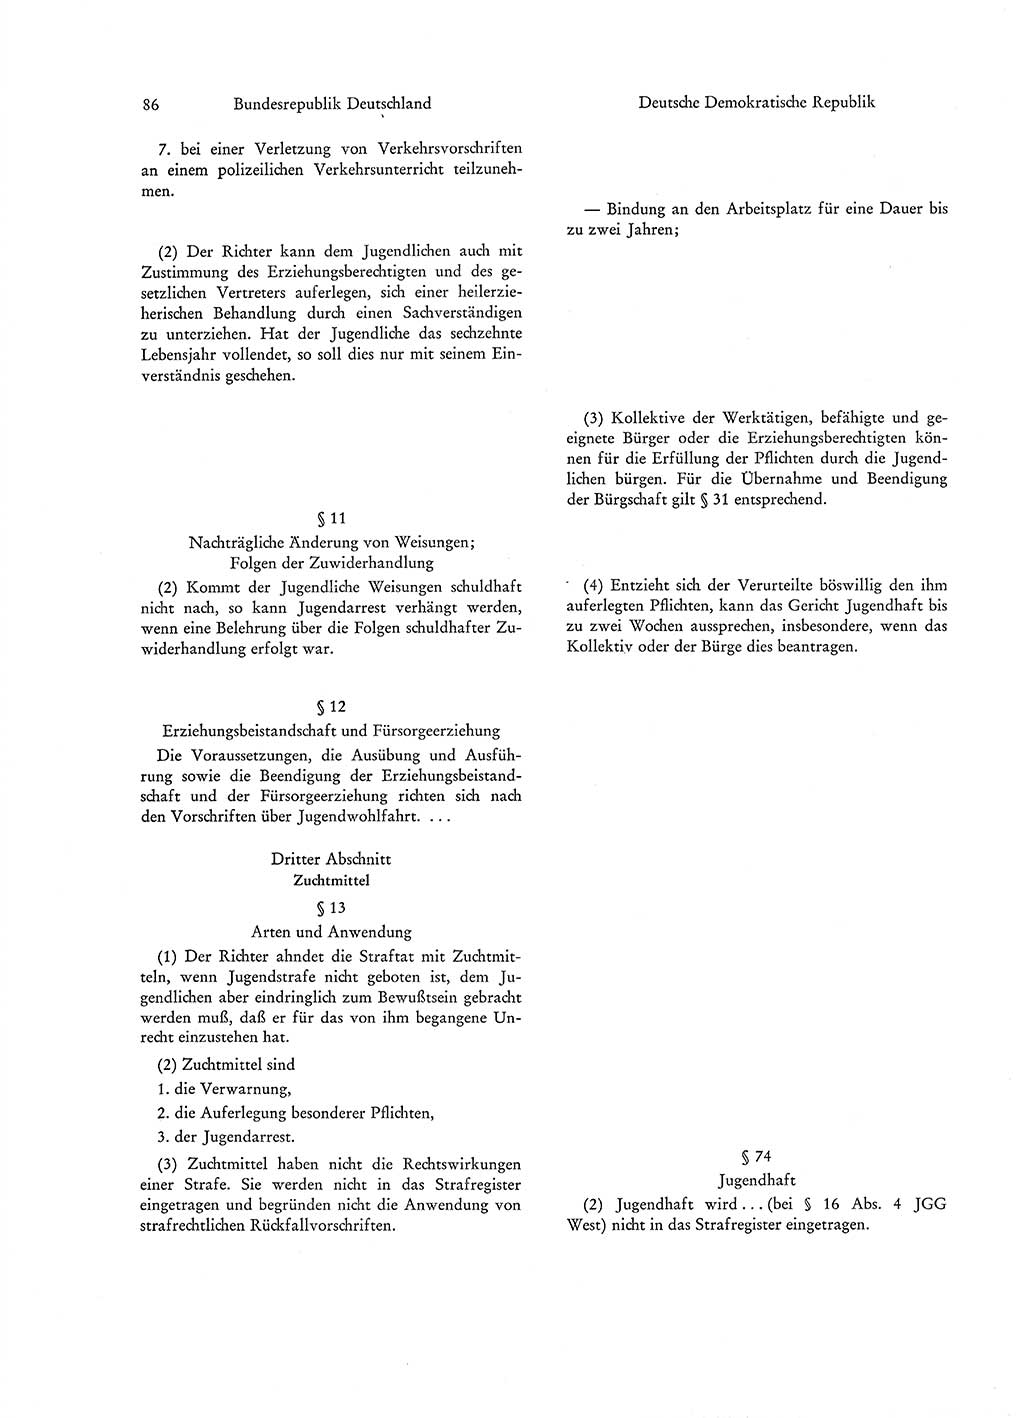 Strafgesetzgebung in Deutschland [Bundesrepublik Deutschland (BRD) und Deutsche Demokratische Republik (DDR)] 1972, Seite 86 (Str.-Ges. Dtl. StGB BRD DDR 1972, S. 86)